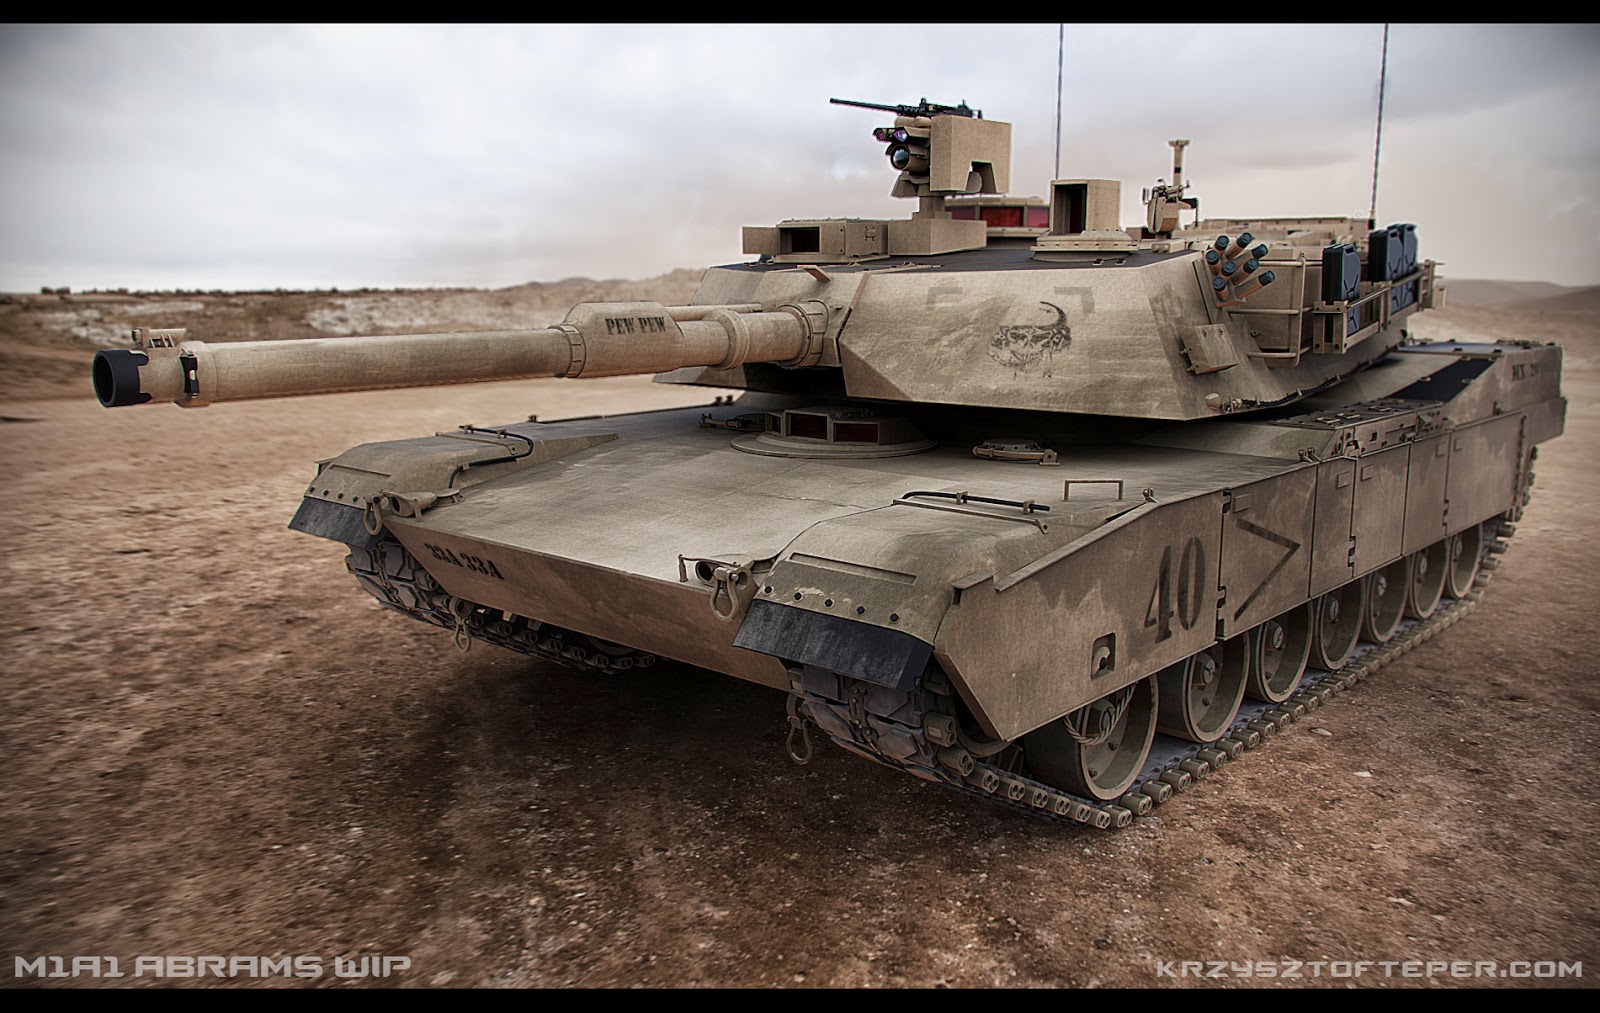 Abrams.jpg